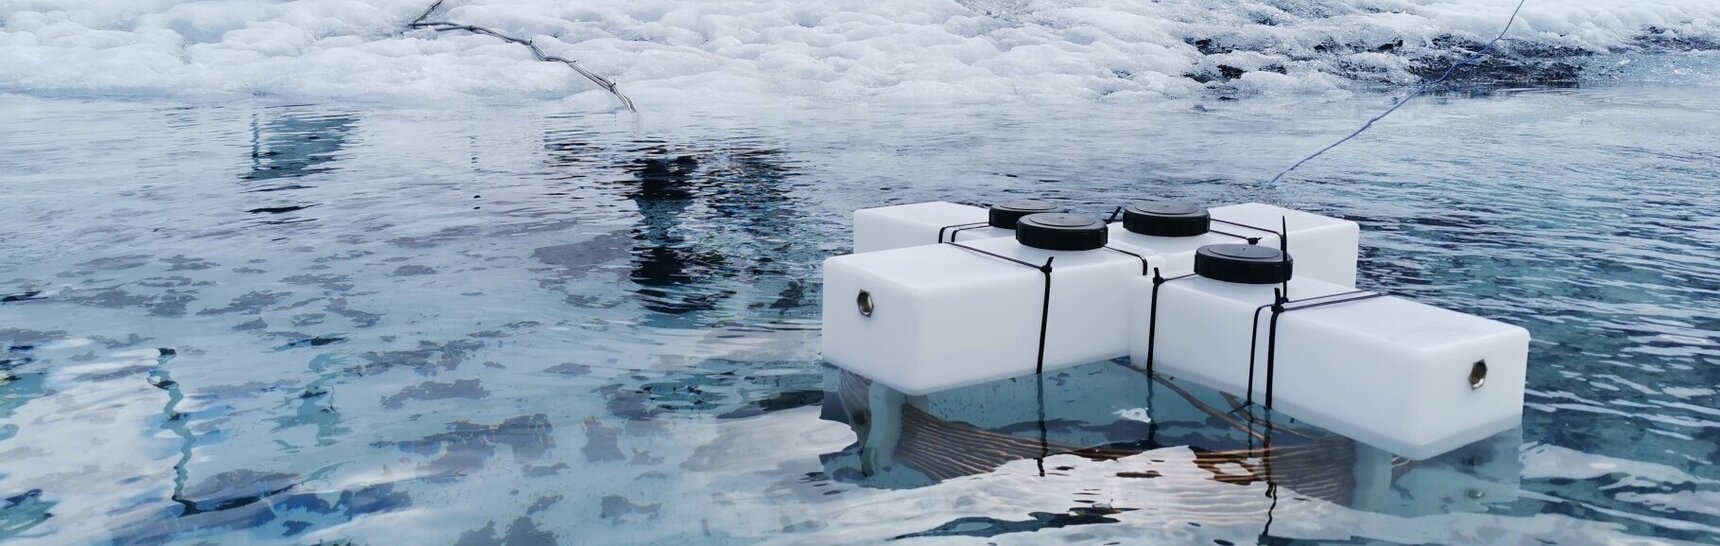 Der Künstler Markus Jeschaunig und Team testen seine Maschine im Gletschersee am Dachstein